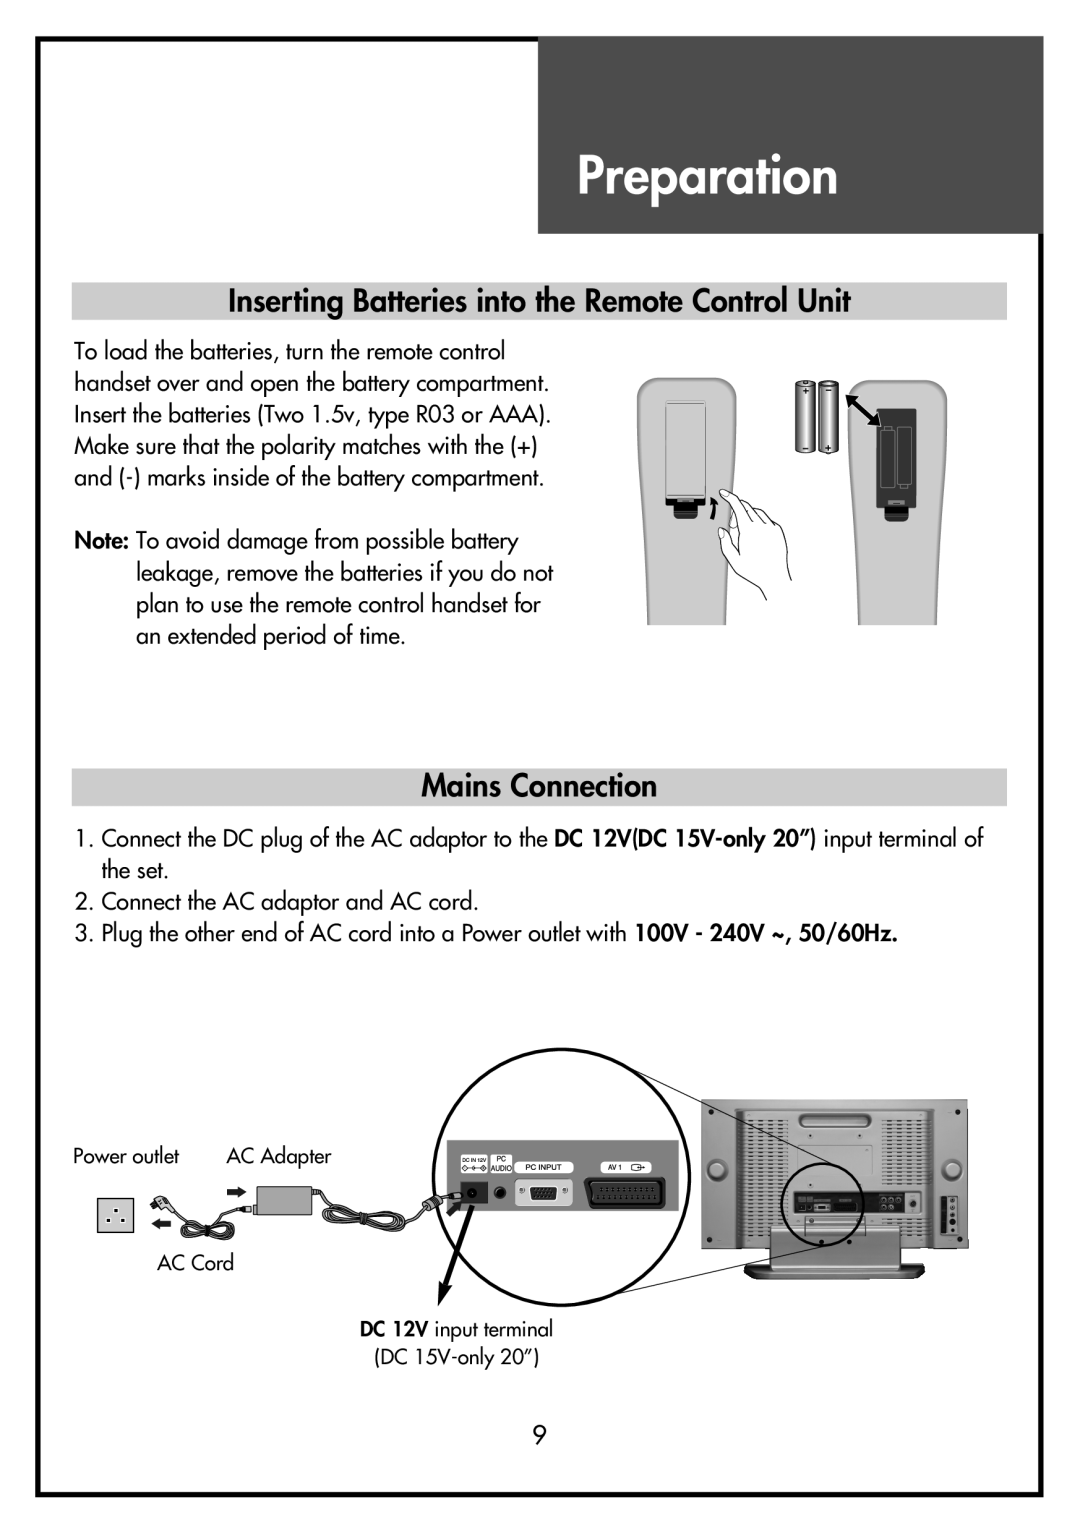 Daewoo DSL-20D4, DSL-15D3, DSL-15D4 Preparation, Inserting Batteries into the Remote Control Unit, Mains Connection 